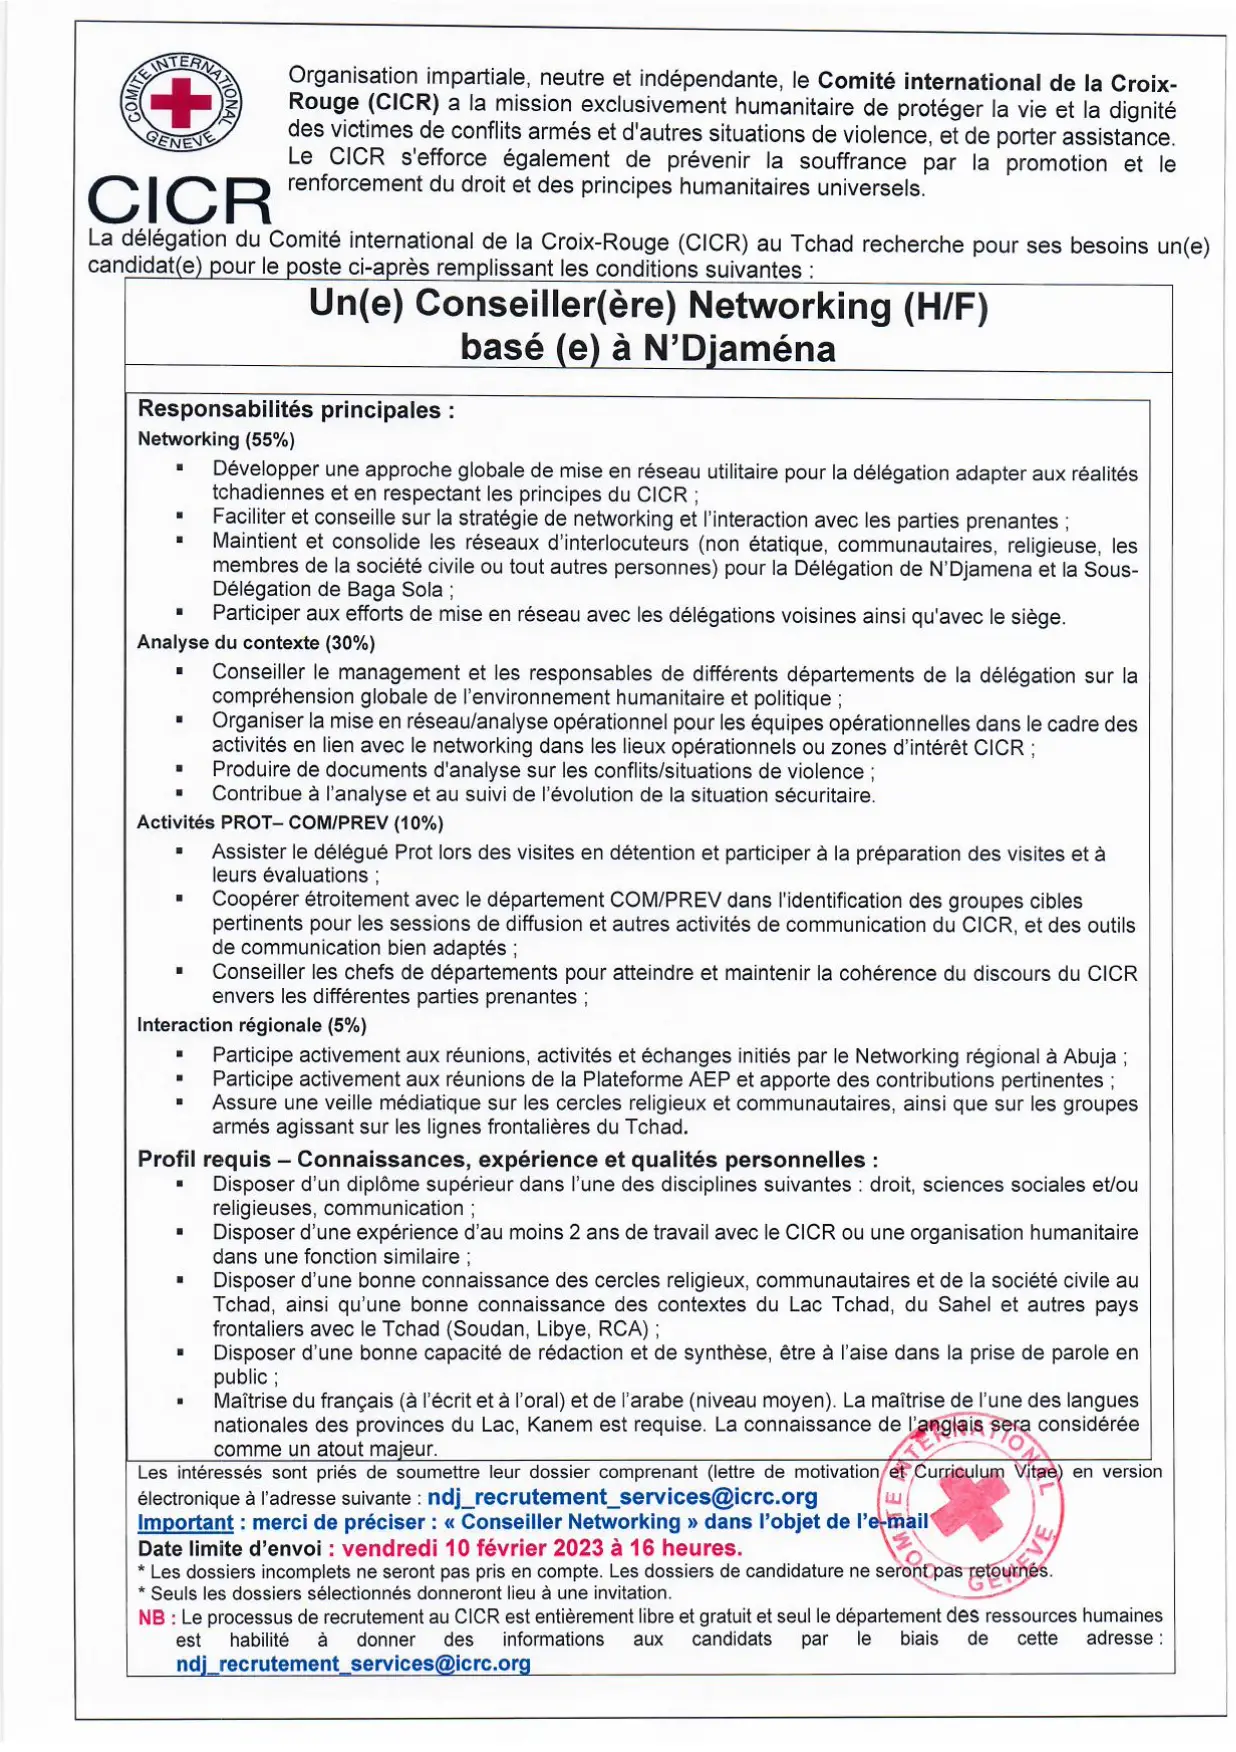 Tchad : la Délégation du CICR recrute un(e) Conseiller(ère) Networking (H/F) basé(e) à N'Djamena